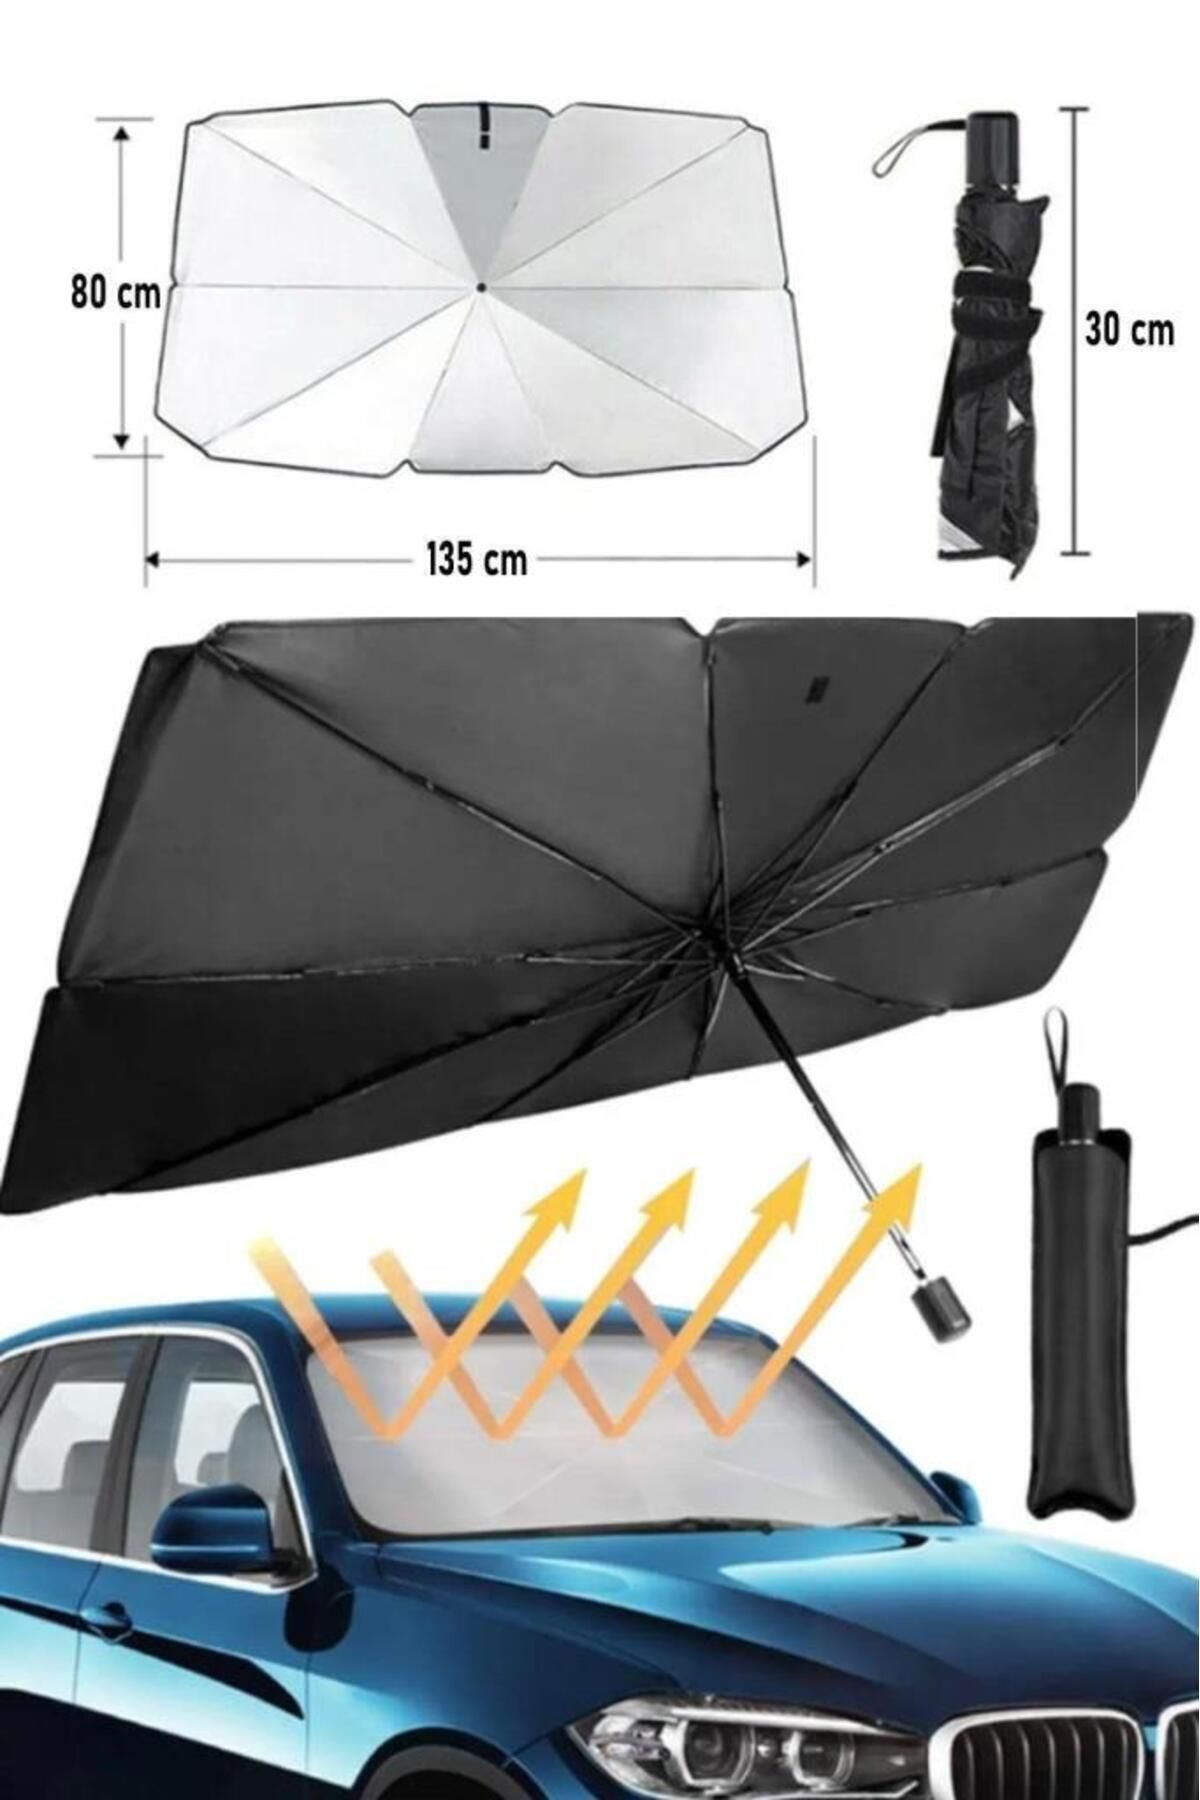 VANCKEY Araba Ön Cam Güneşlik Katlanabilir Güneşlik Şemsiye Ön Cam Gölgelik Büyük Boy 80 Cm X 135 Cm